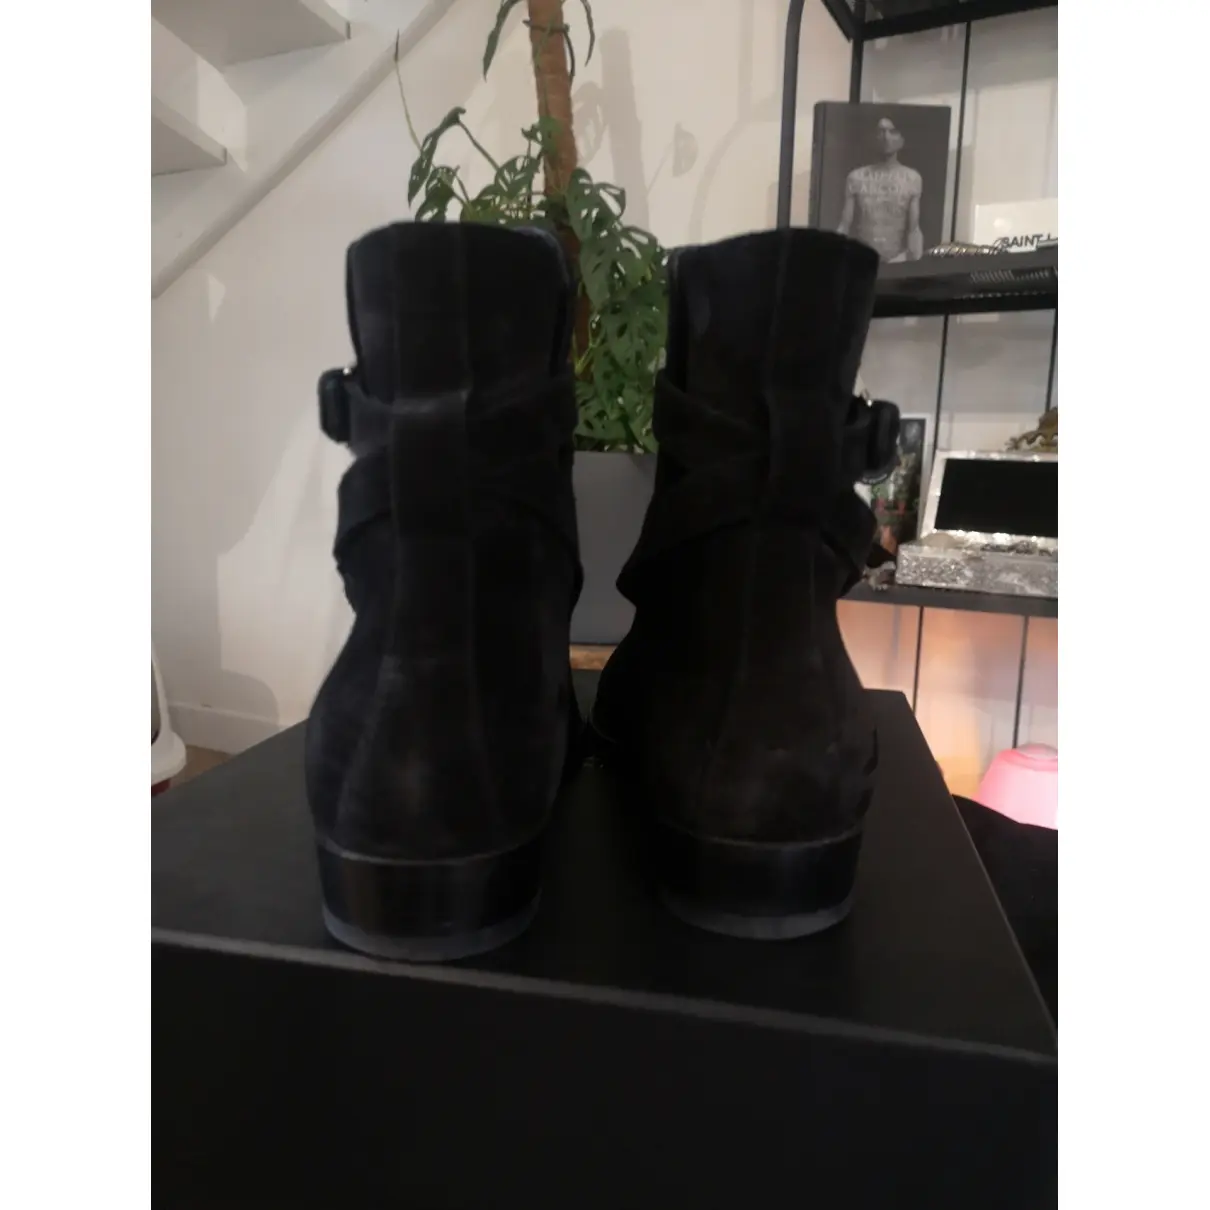 Buy Saint Laurent Wyatt Jodphur boots online